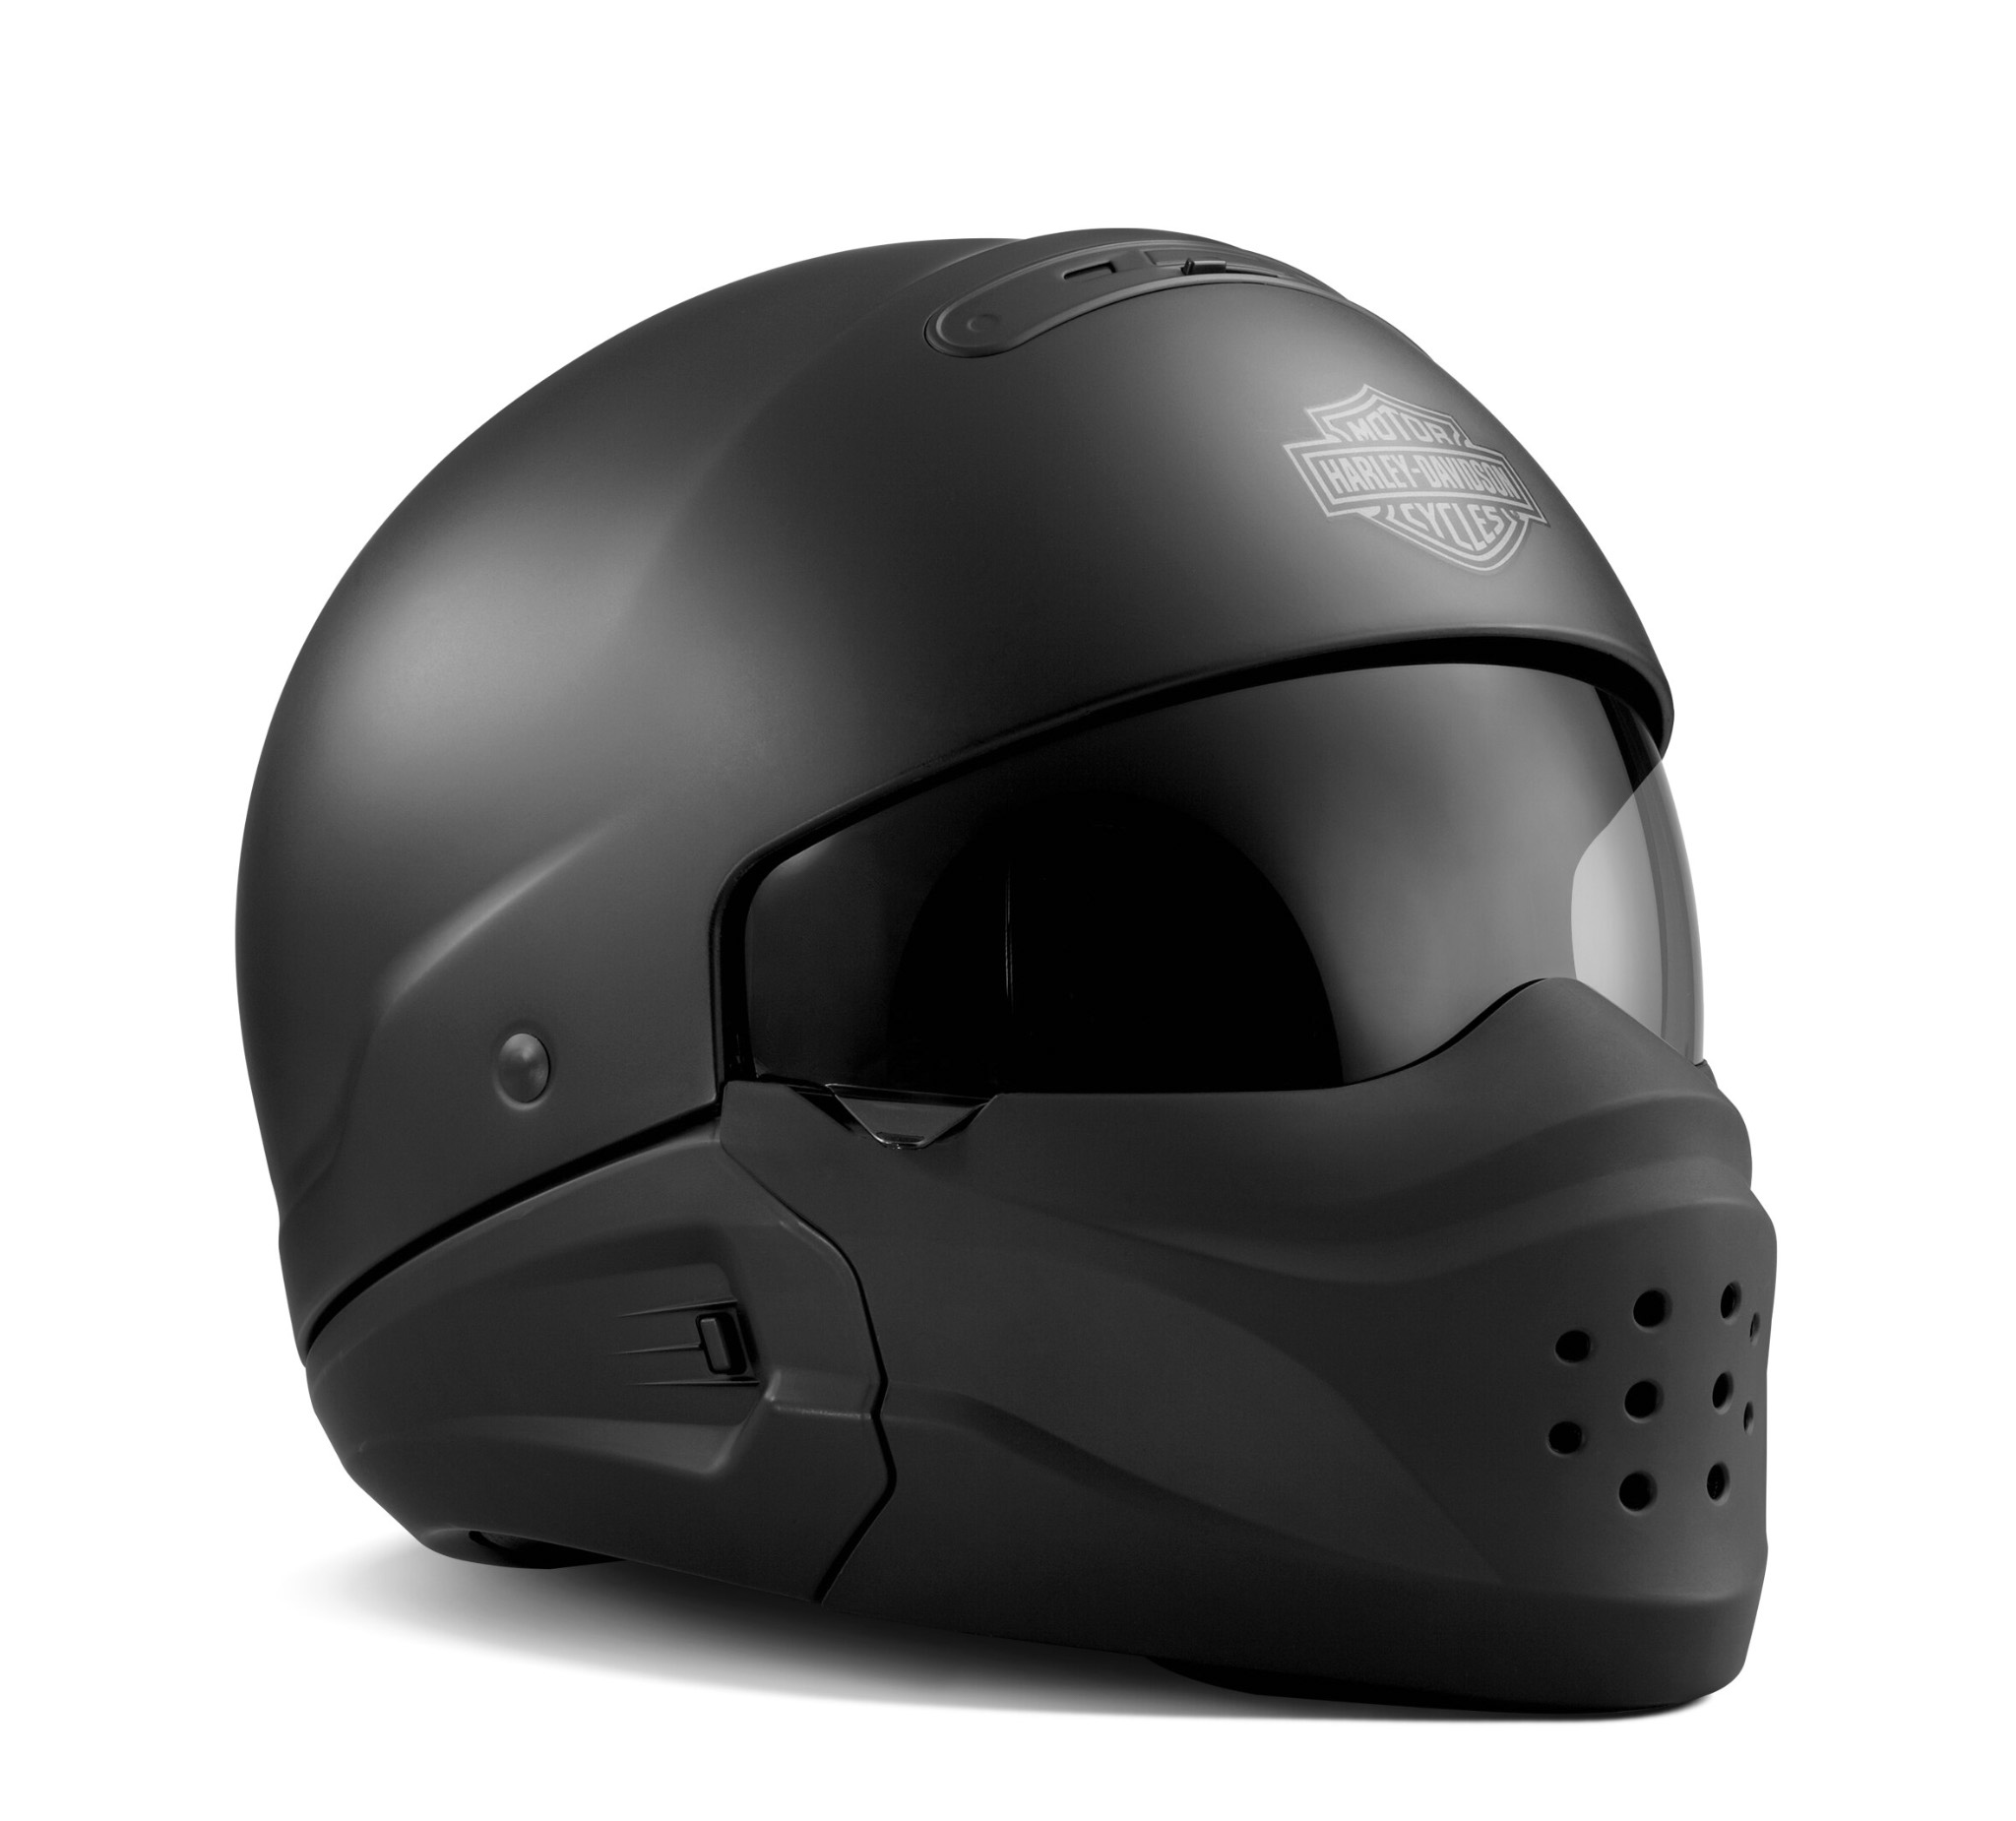 Harley Davidson Helmet Price Off 70 Medpharmres Com